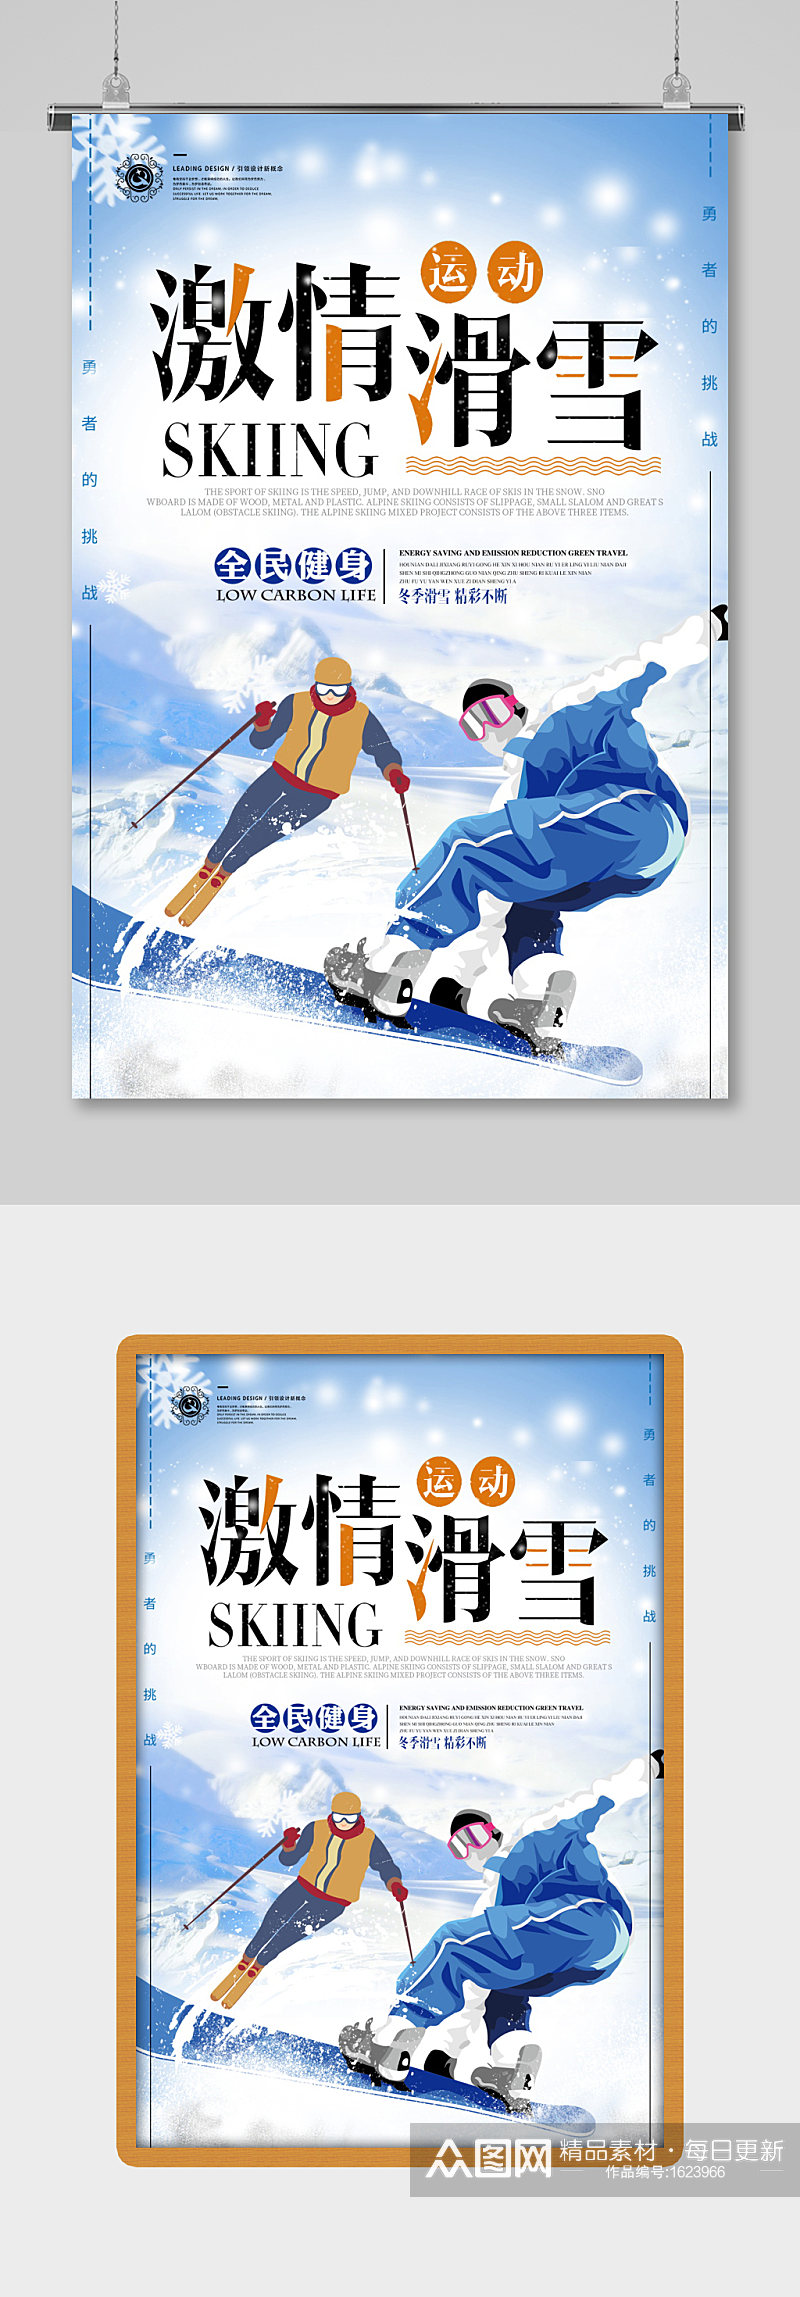 冬奥会冬季激情滑雪海报设计素材